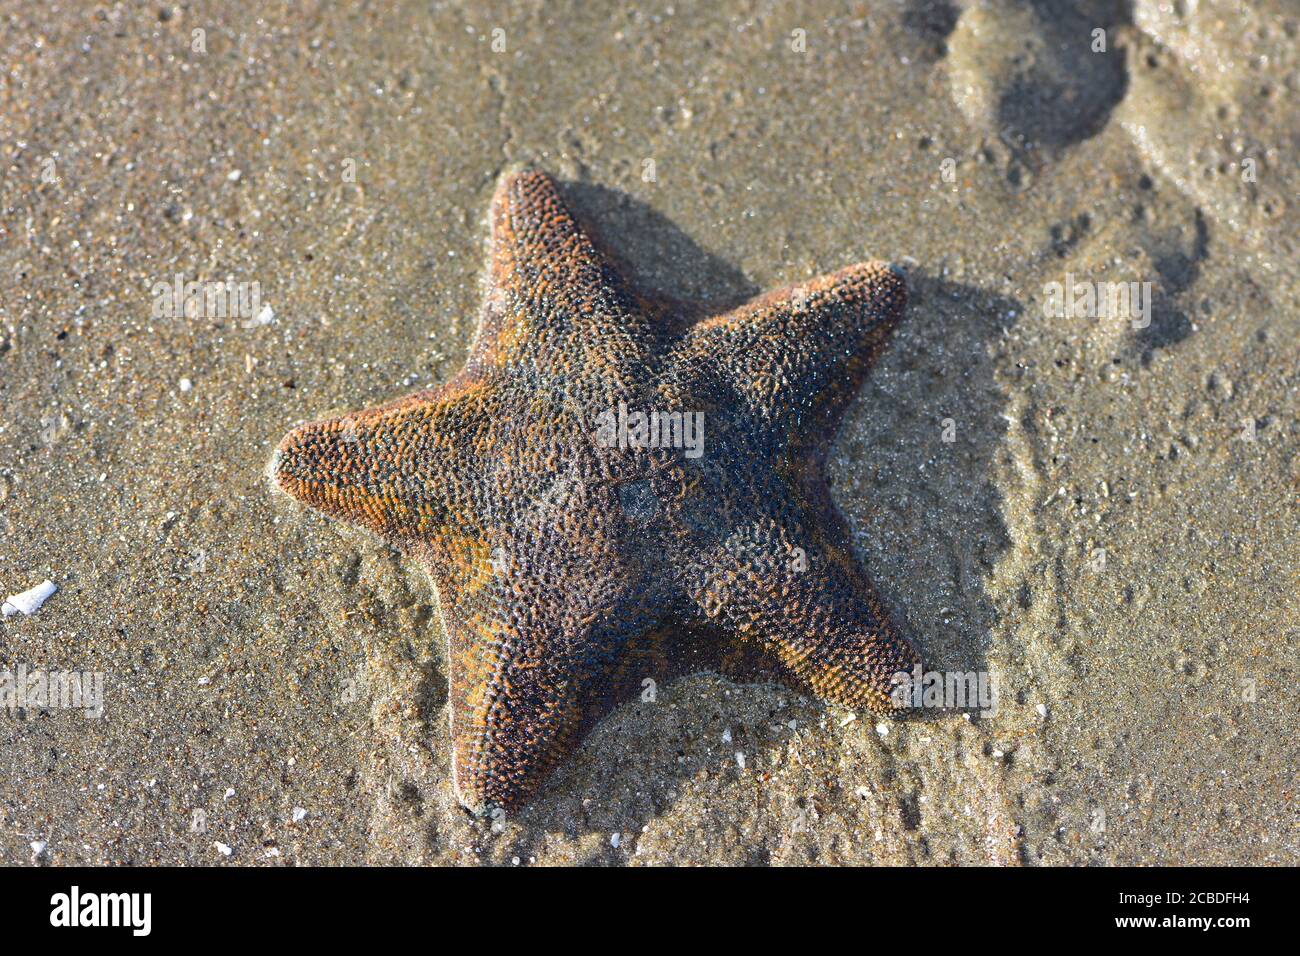 Cojín estrella de mar Patiriella regularis expuestos al aire arrastrándose en barro fino en marea baja. Foto de stock